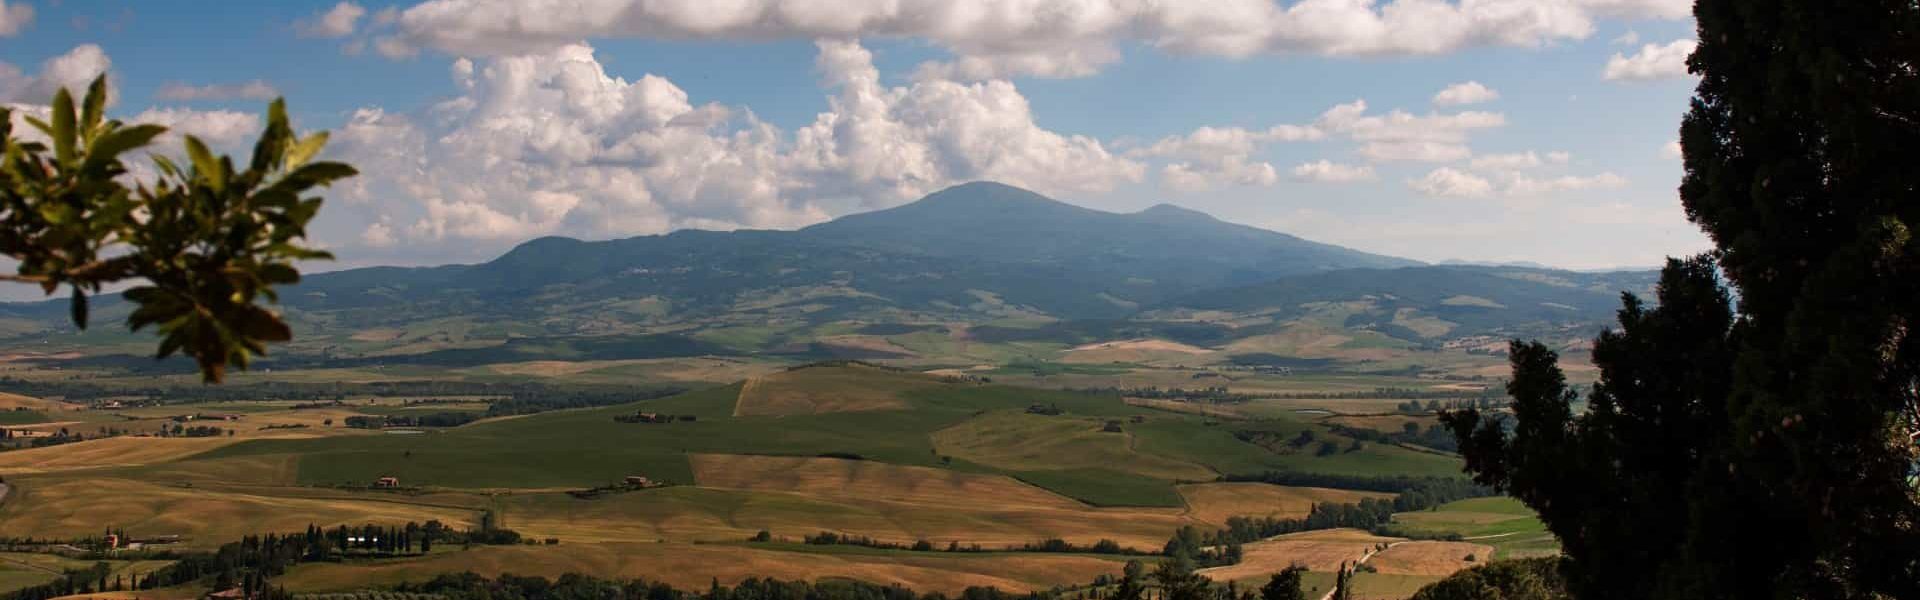 Canva - View of the Monte Amiata